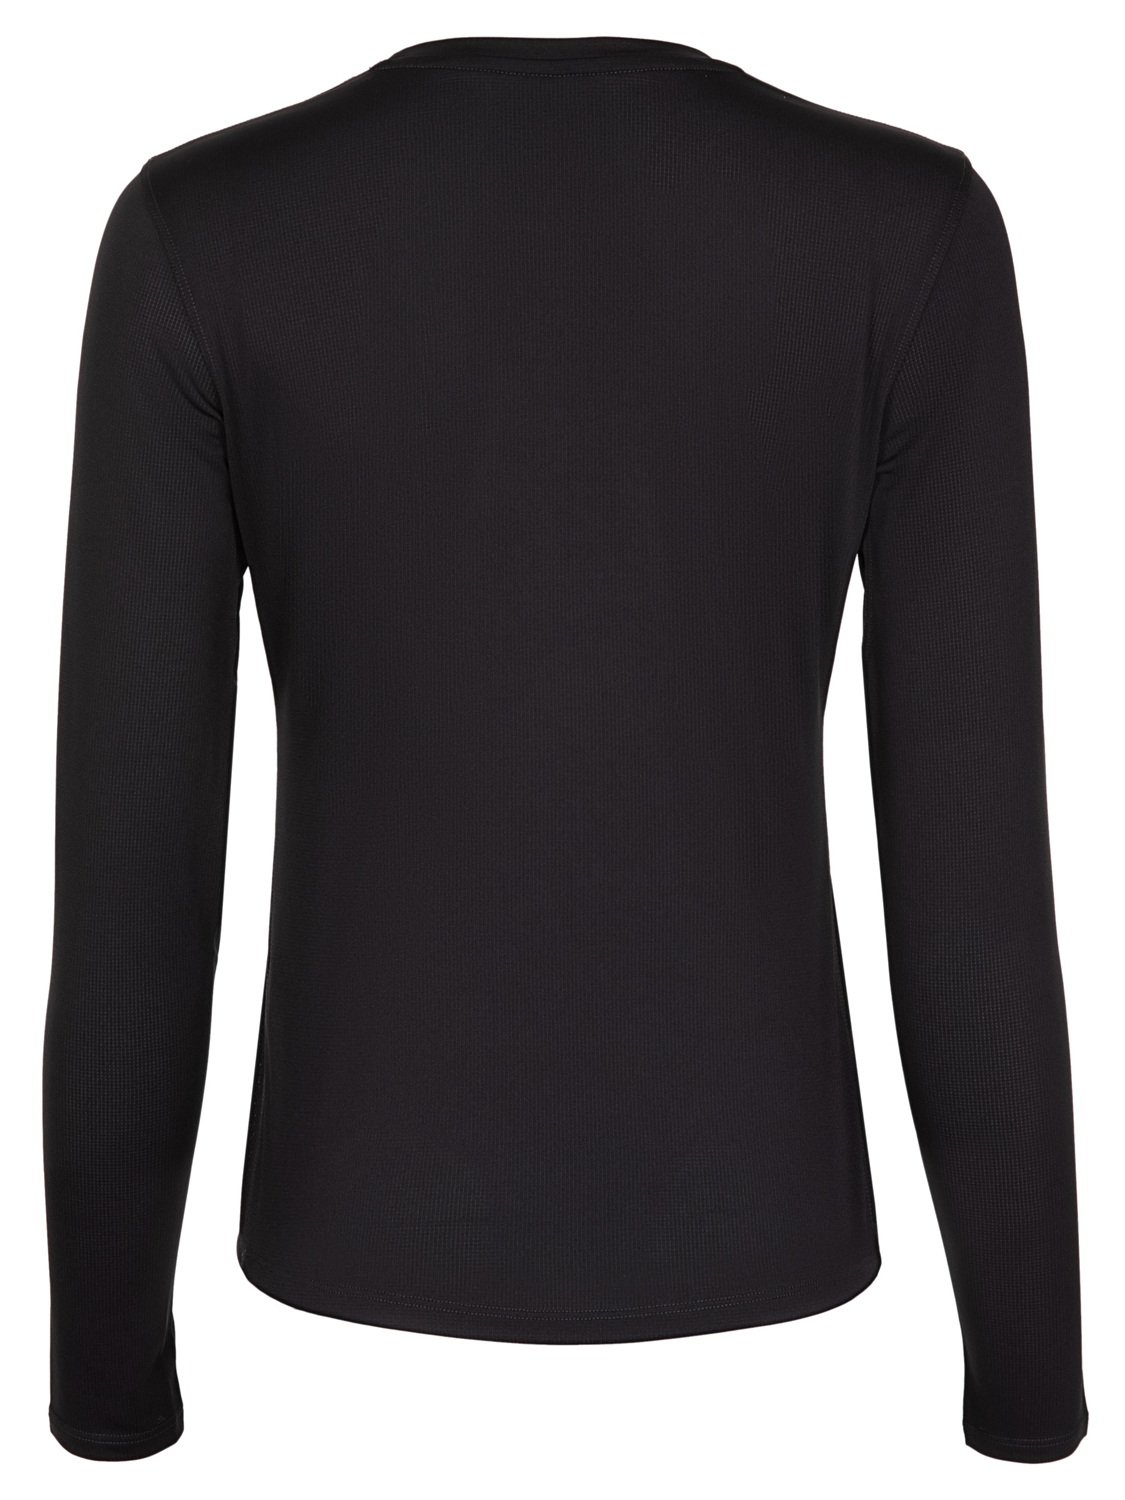 Футболка с длинным рукавом для активного отдыха Kailas Long Sleeve Functional T-shirt Women's Black